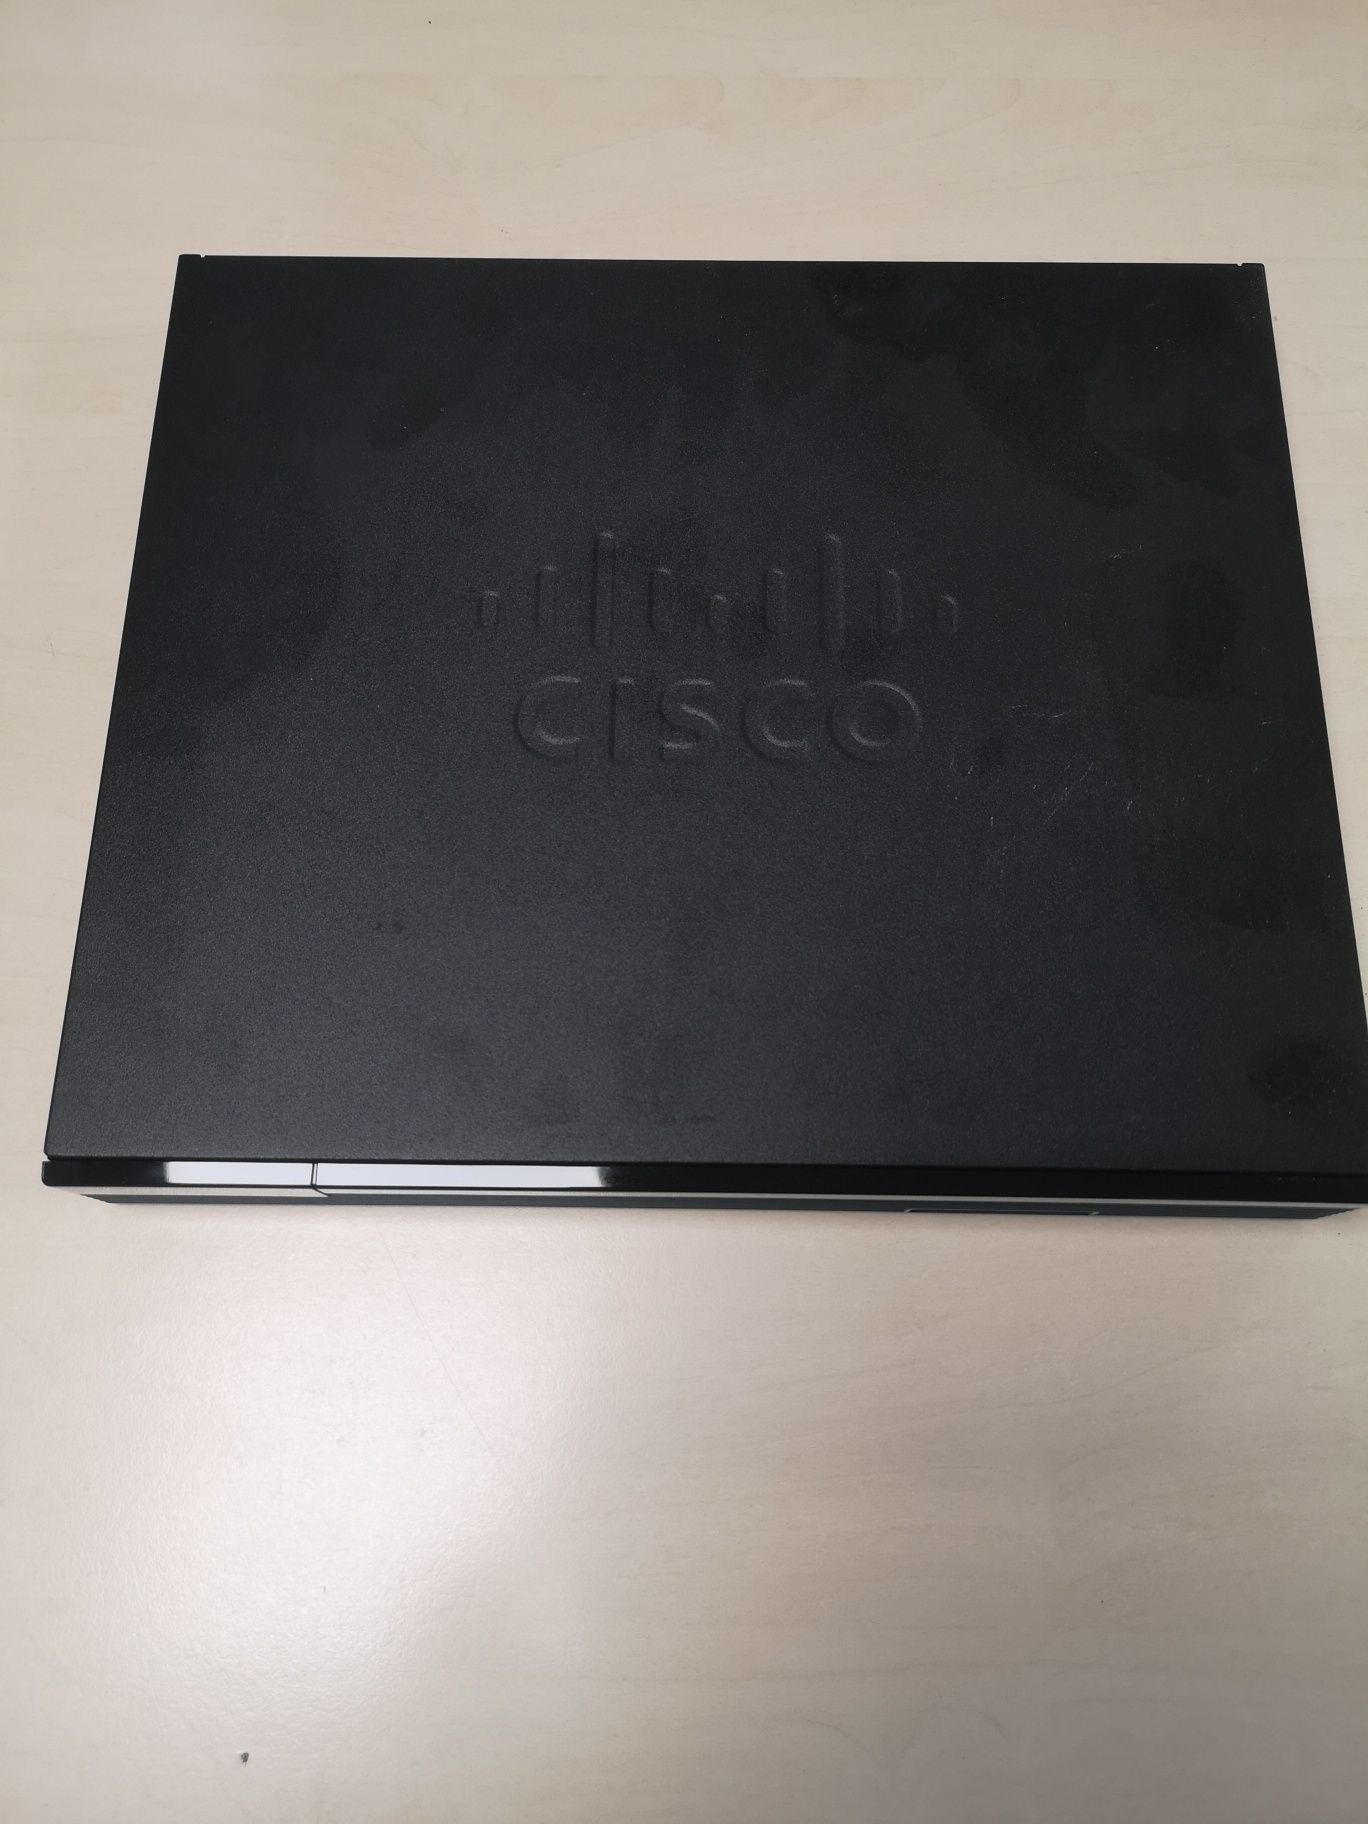 Cisco 1900 series